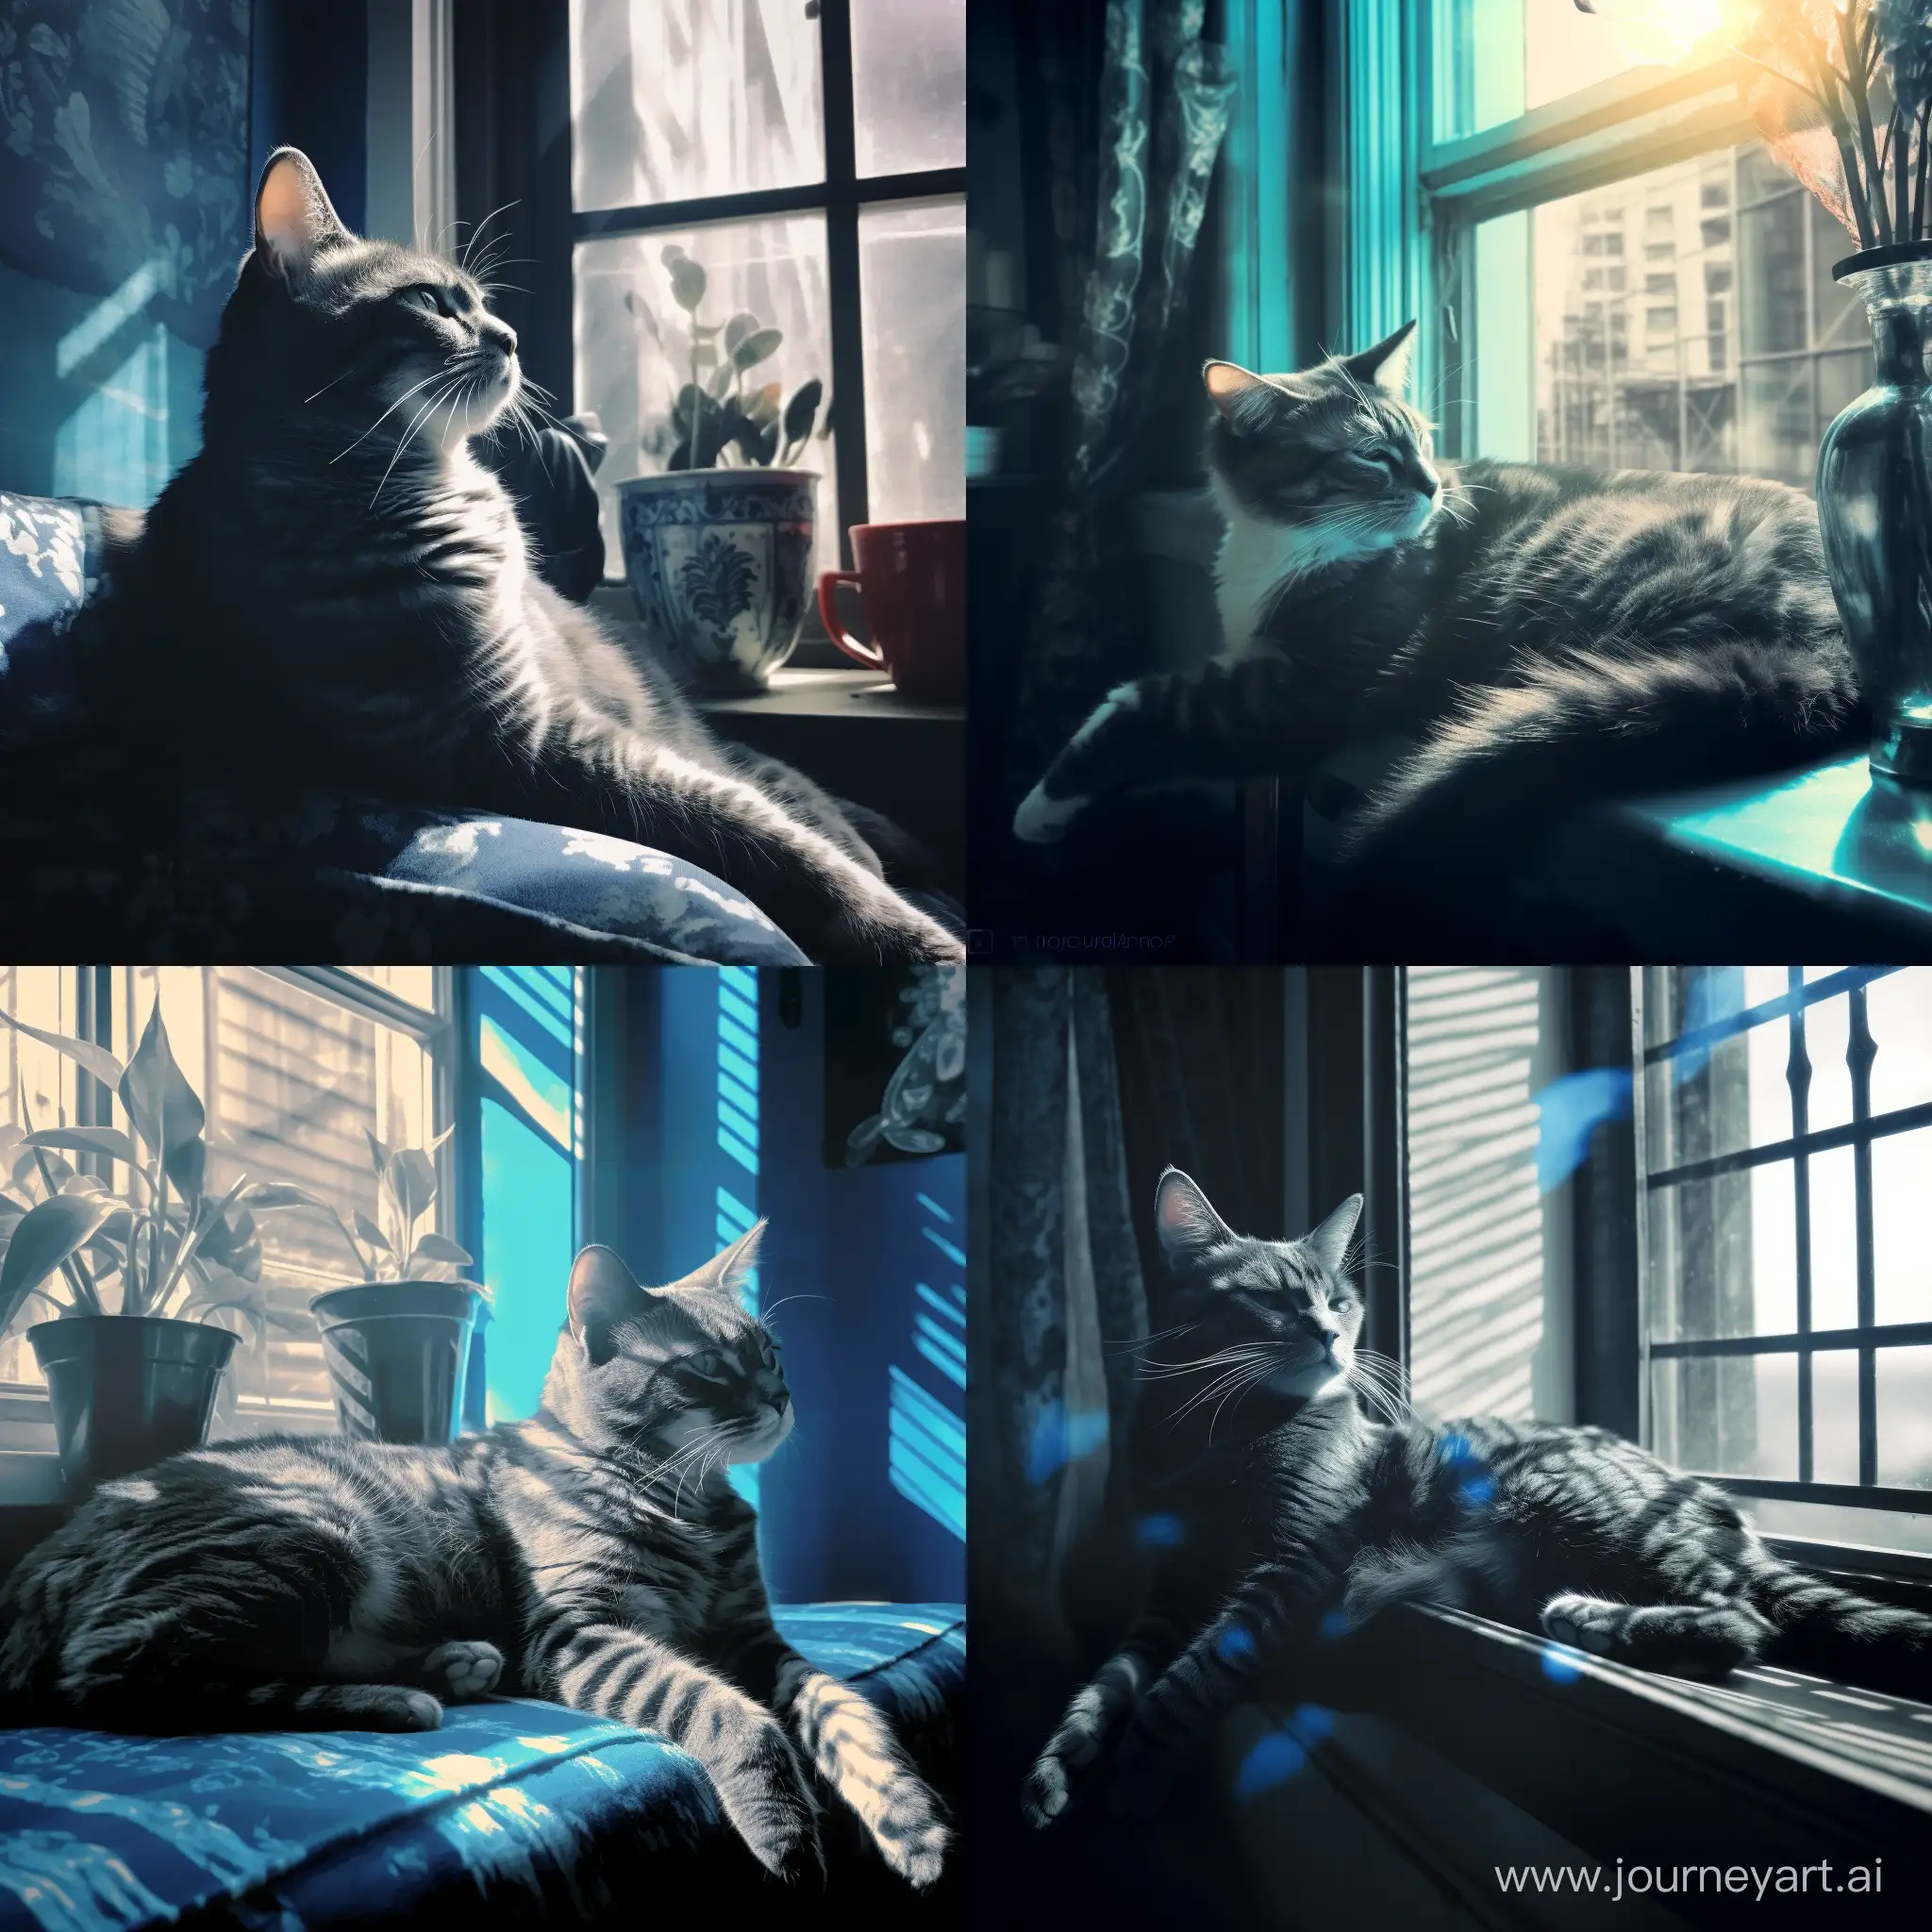 Duotone, голубая кошка с черными узорами лениво разлеглась на фоне окна, мягкий свет проникает через окна отбрасывая блики на кошку